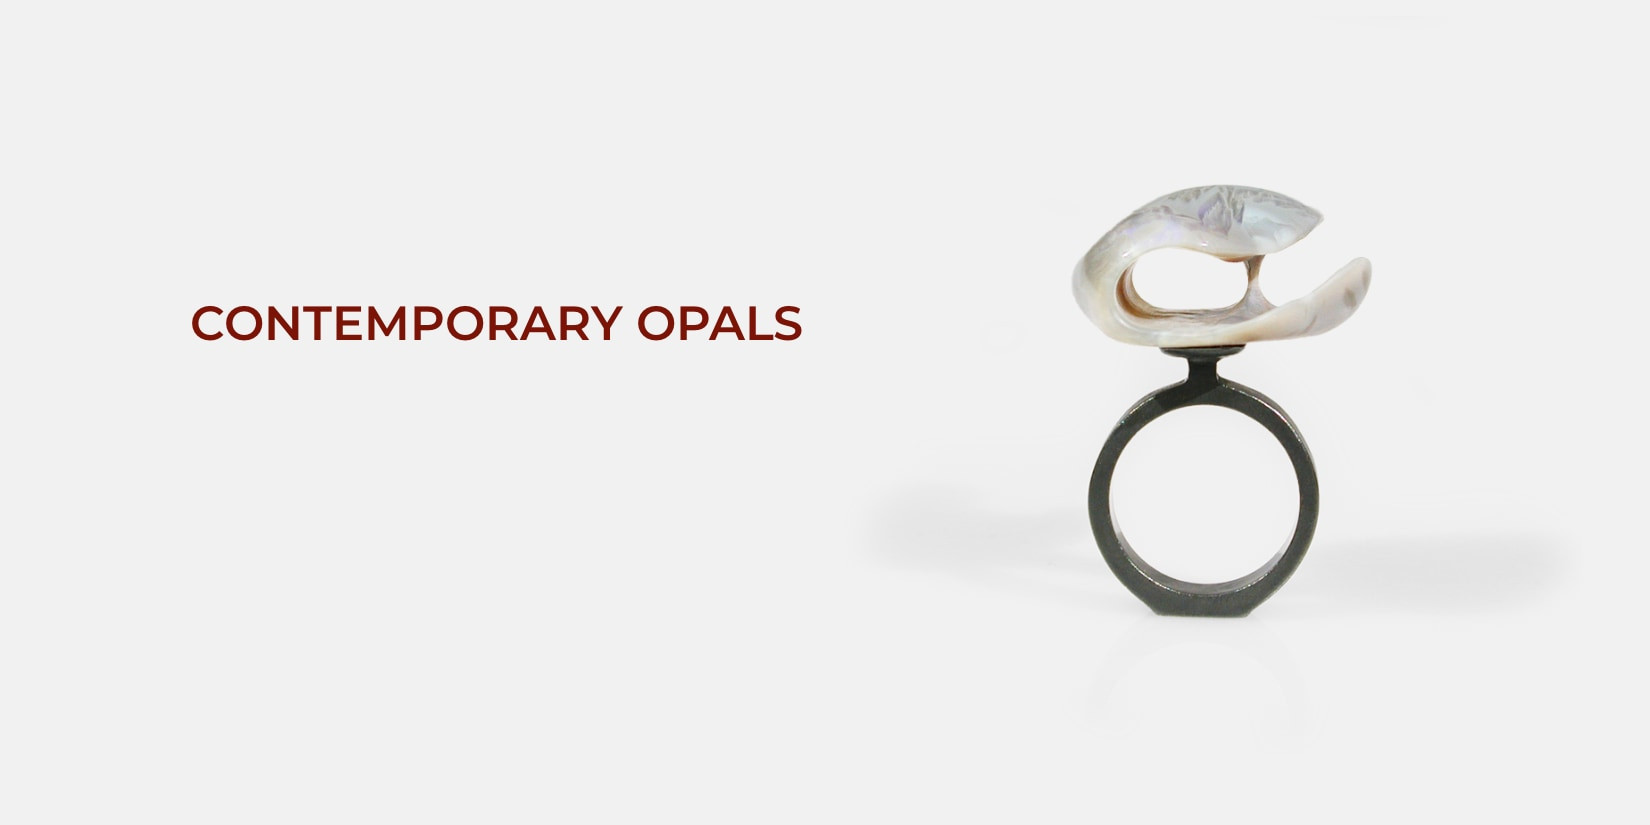 Opal sculpture ring